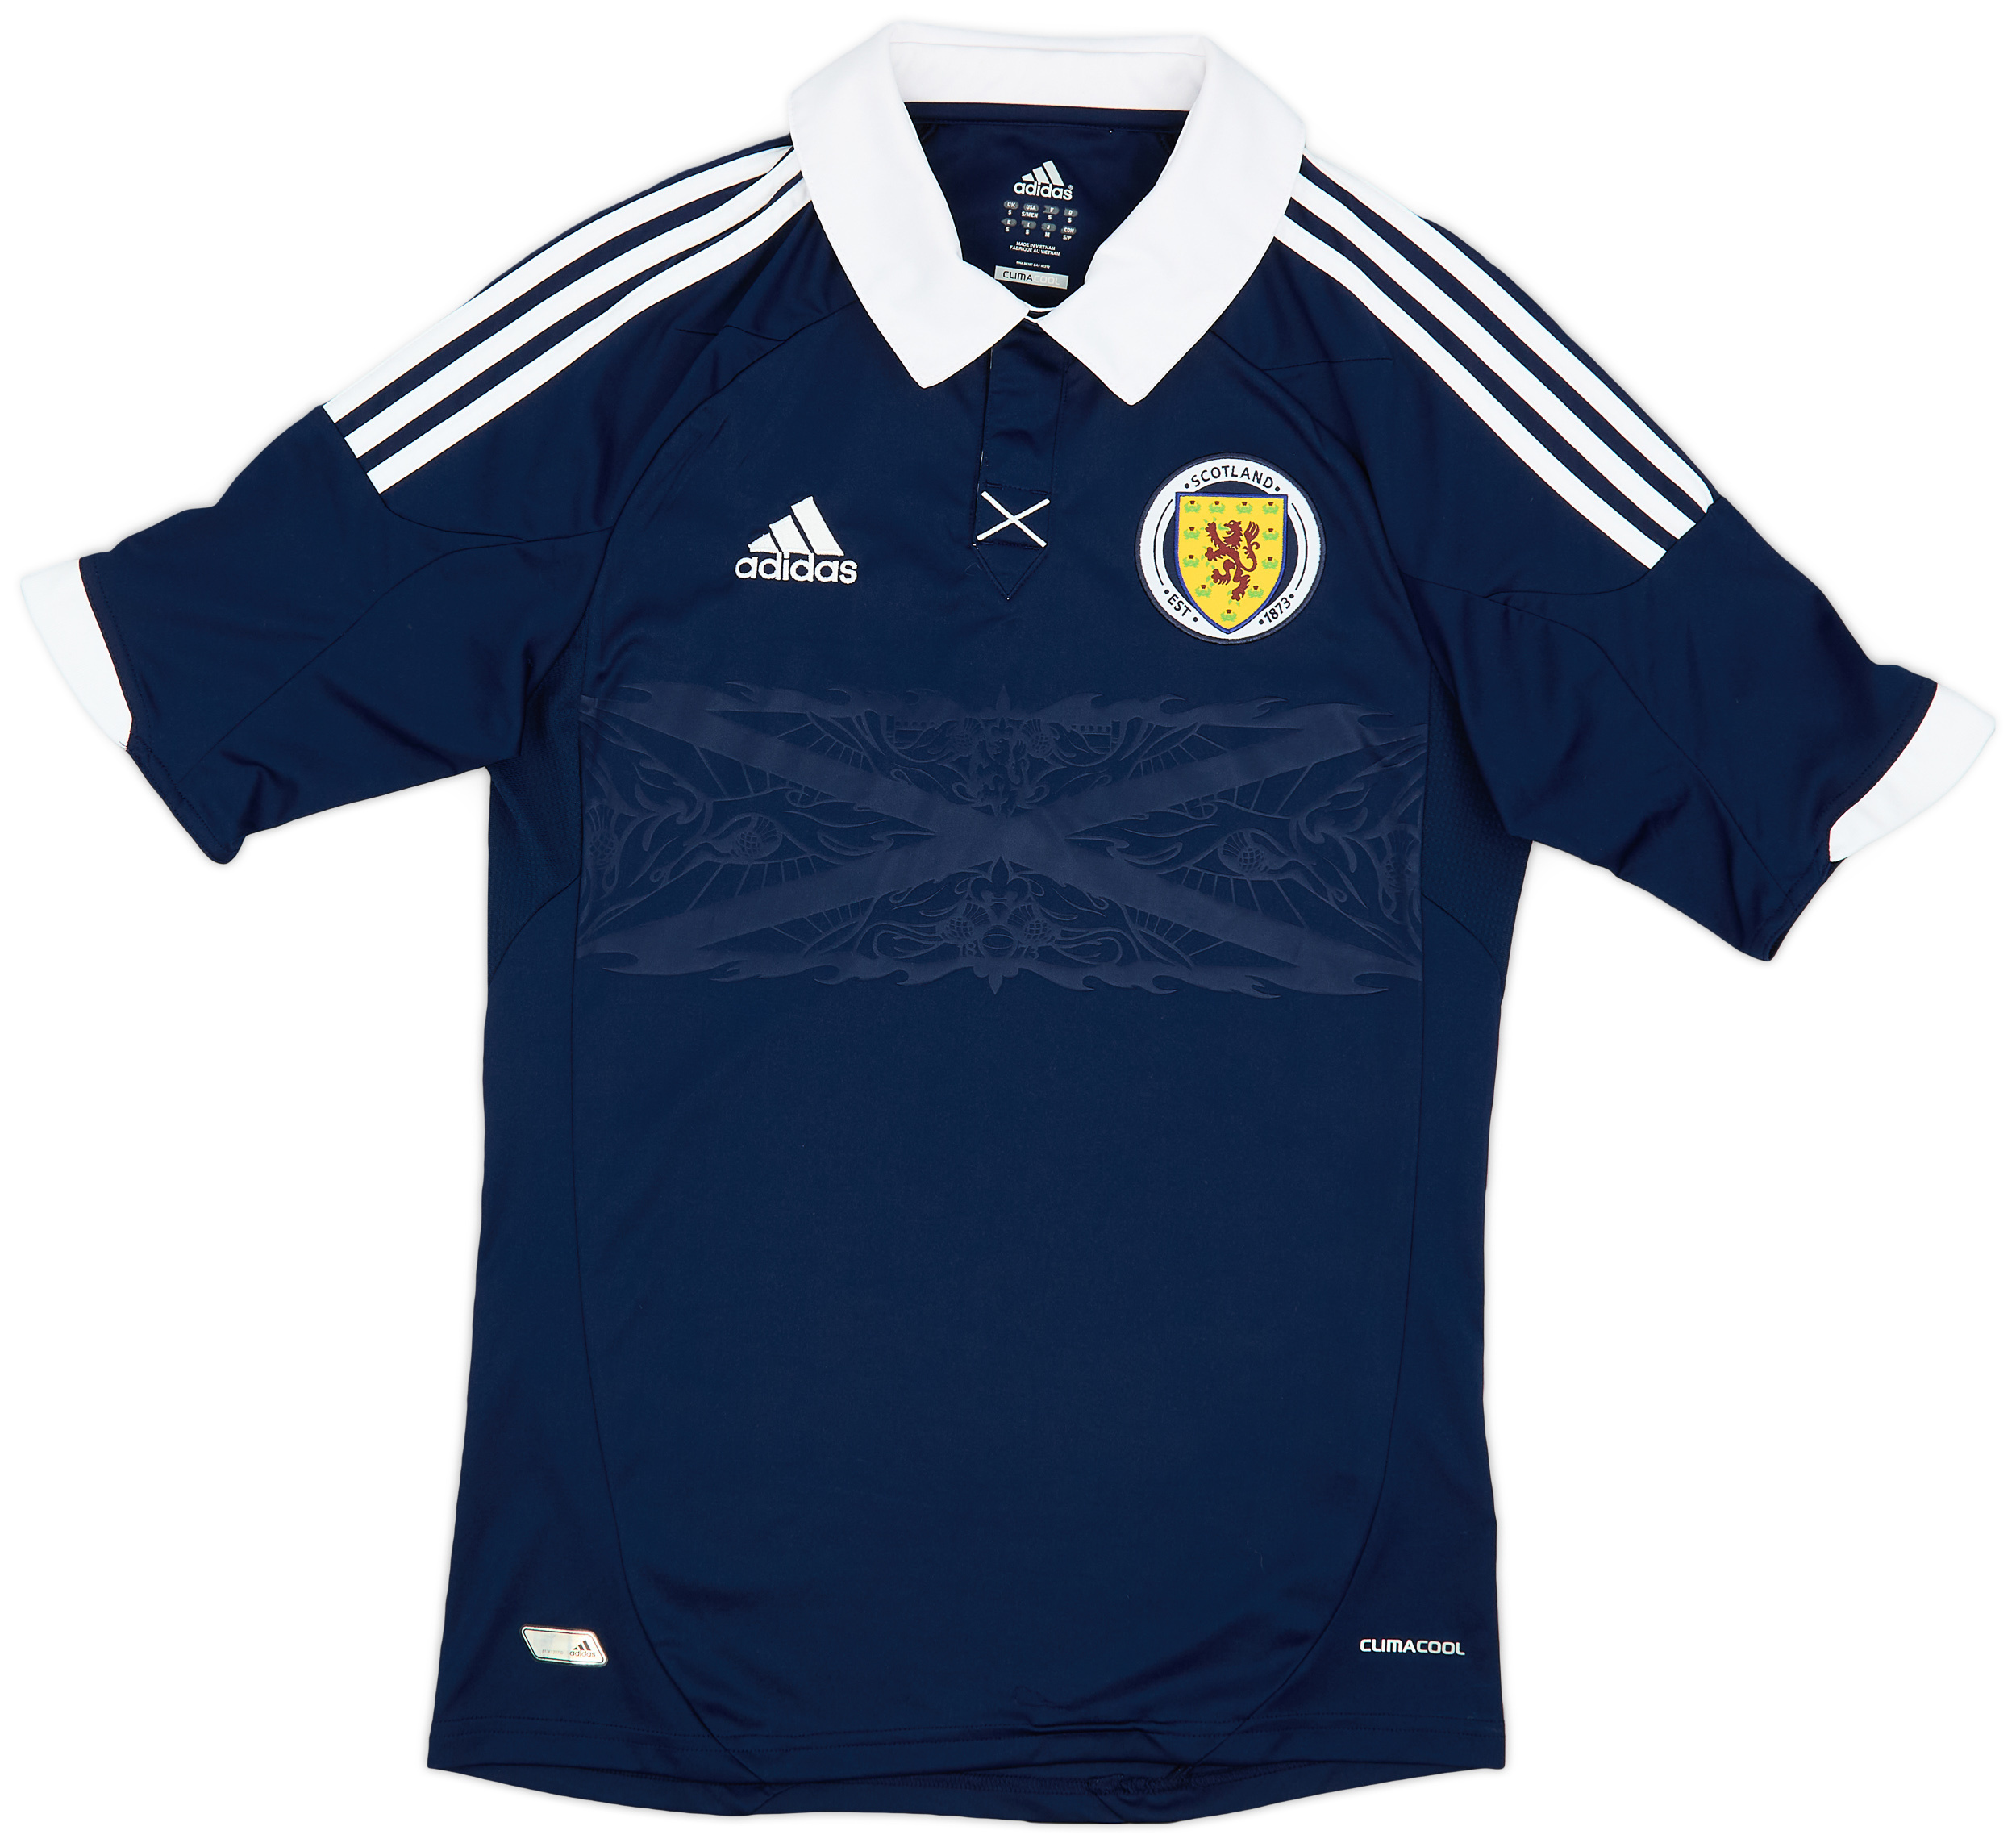 2011-13 Scotland Home Shirt - 10/10 - ()